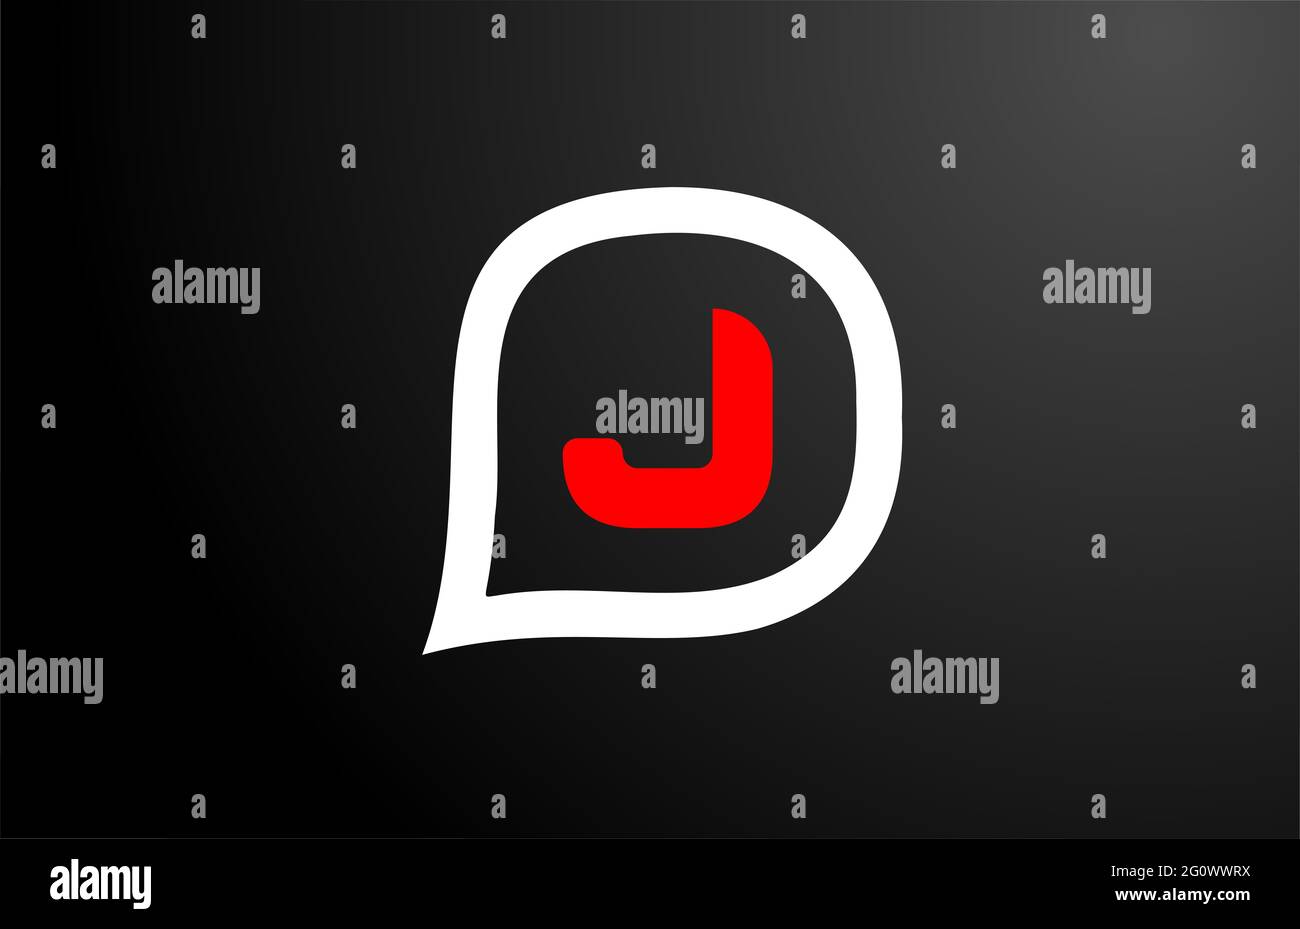 J Letter design con nuvola di domande rossa. Logo alfabeto. Icona di branding per prodotti e società Foto Stock